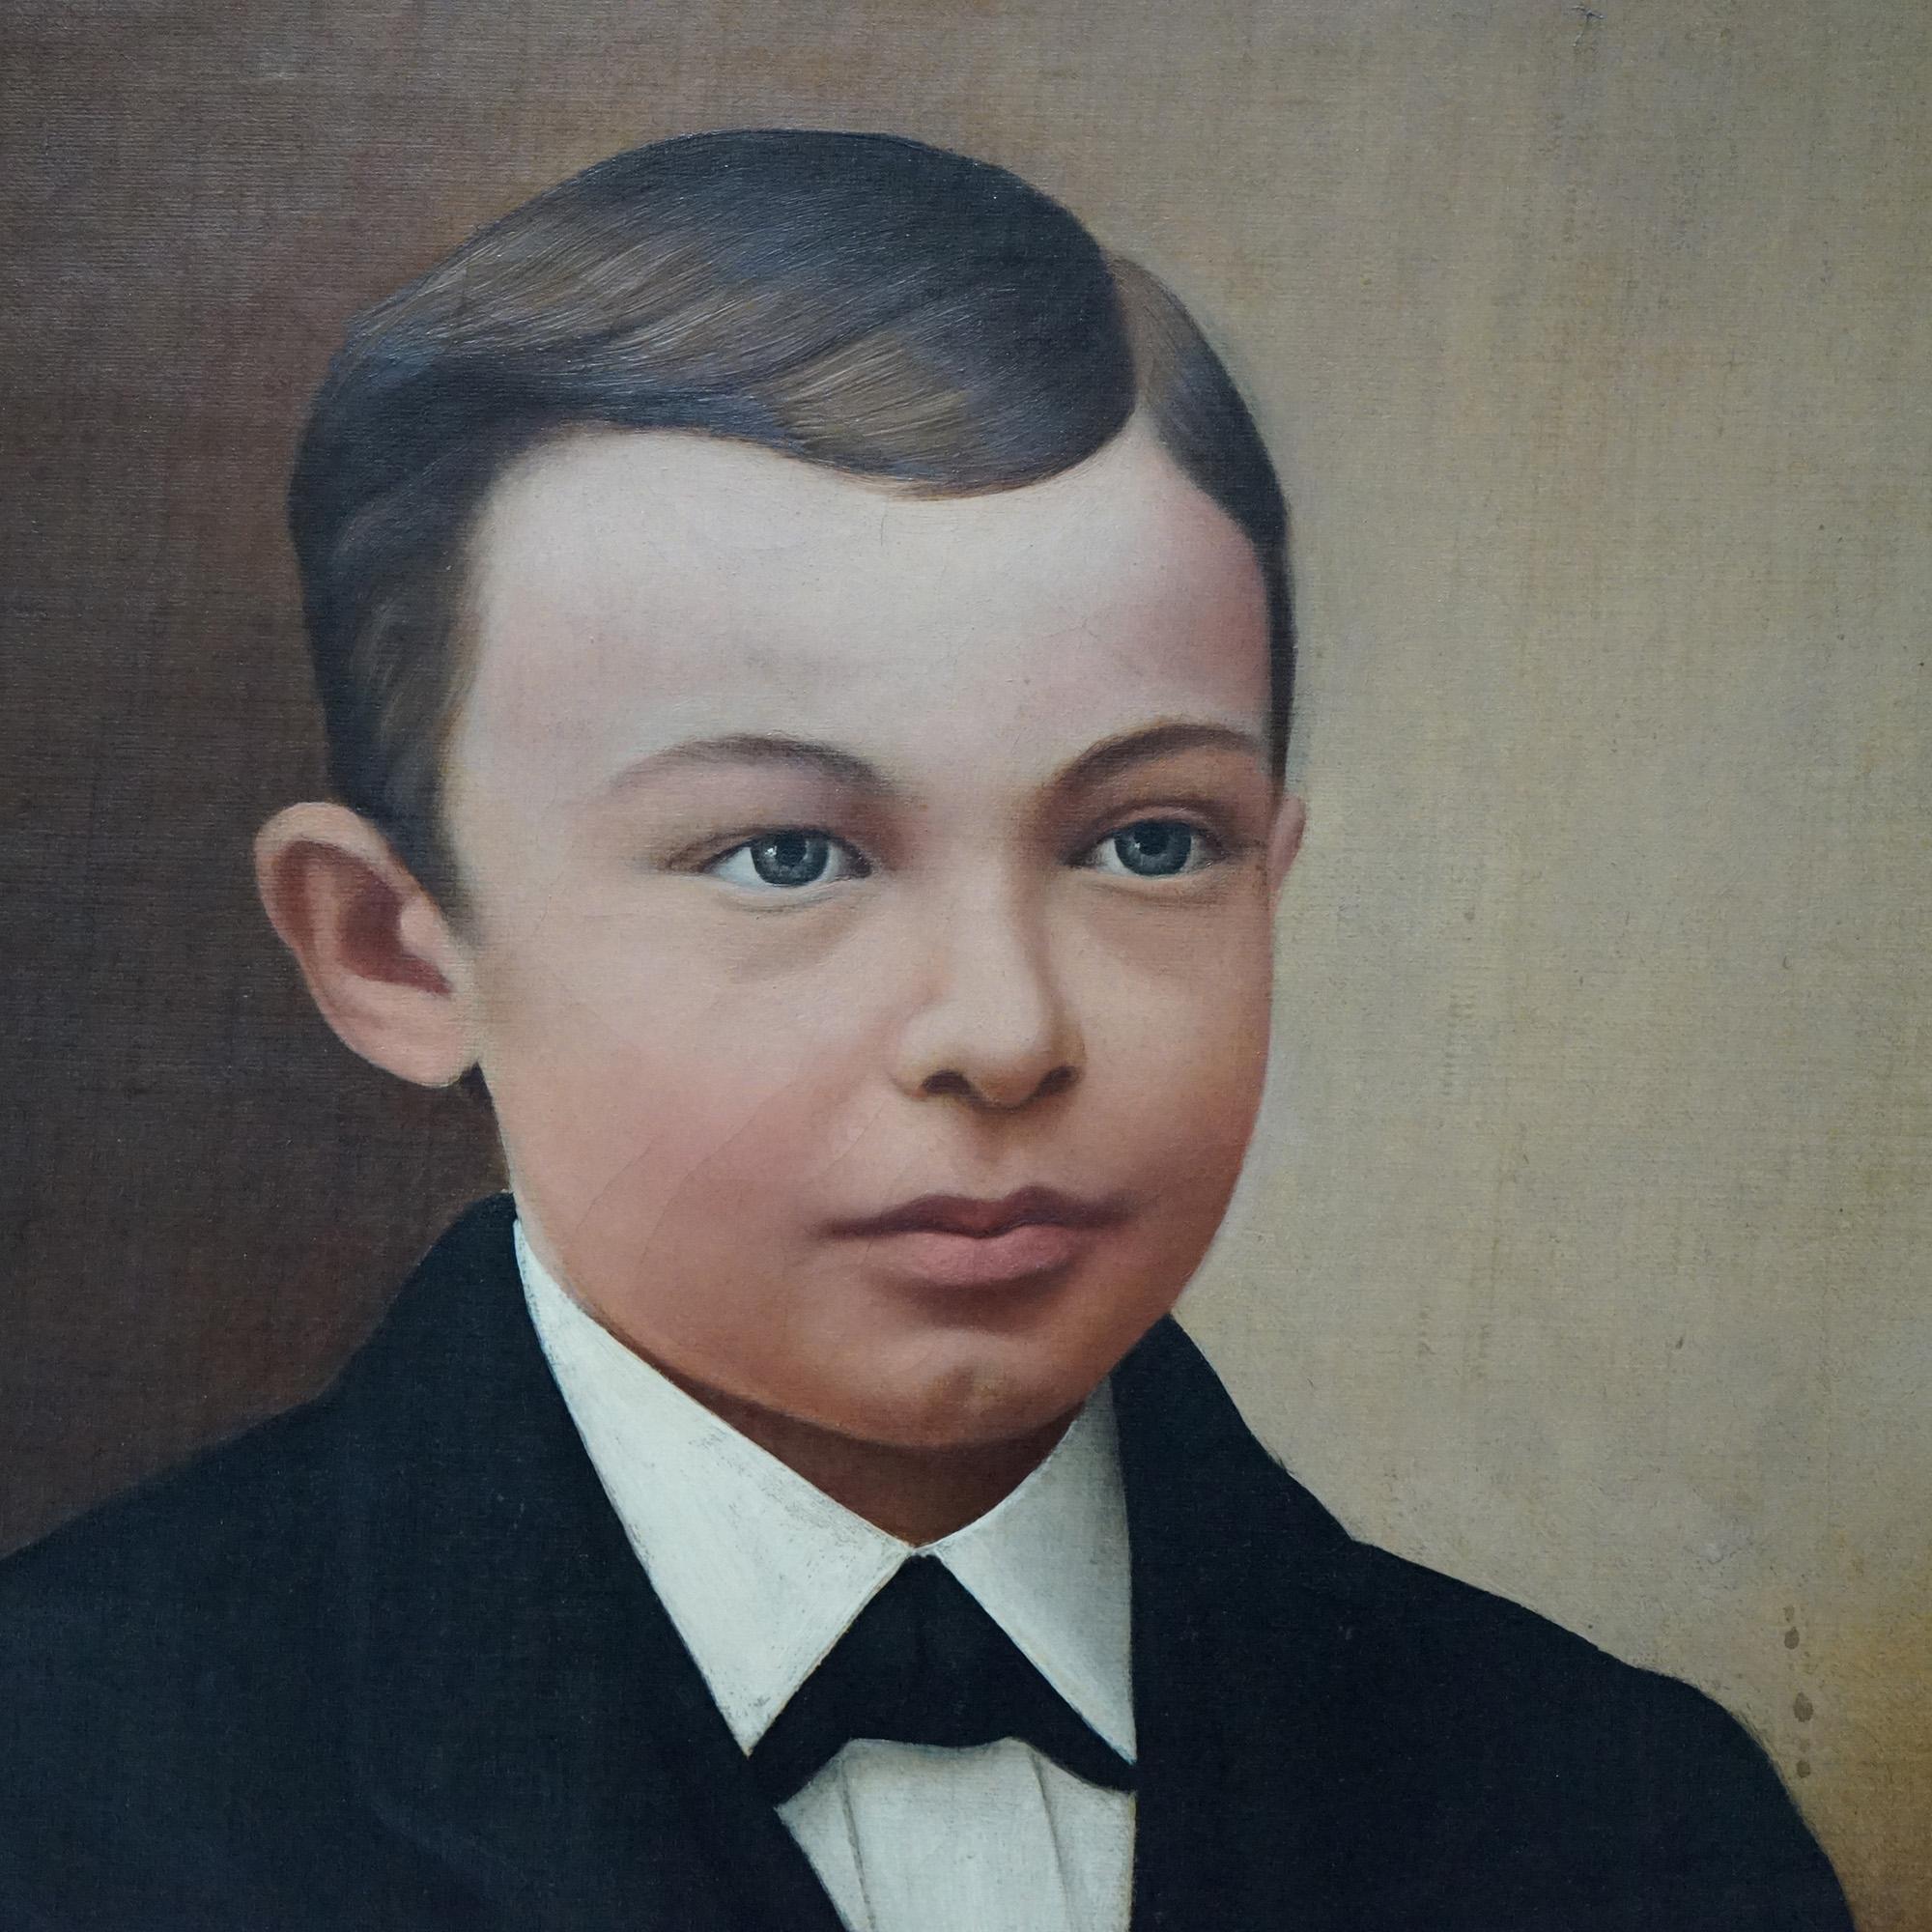 Une peinture ancienne de S. B. Shiley offre un portrait d'un jeune garçon à l'huile sur toile par S.B. Shiley. Shirley, assise dans un cadre en bois doré, vers 1880

Mesures - ensemble 33,5''H x 29,5''L x 4''P ; vue 23,5'' x 19,5'' ; 20'' x